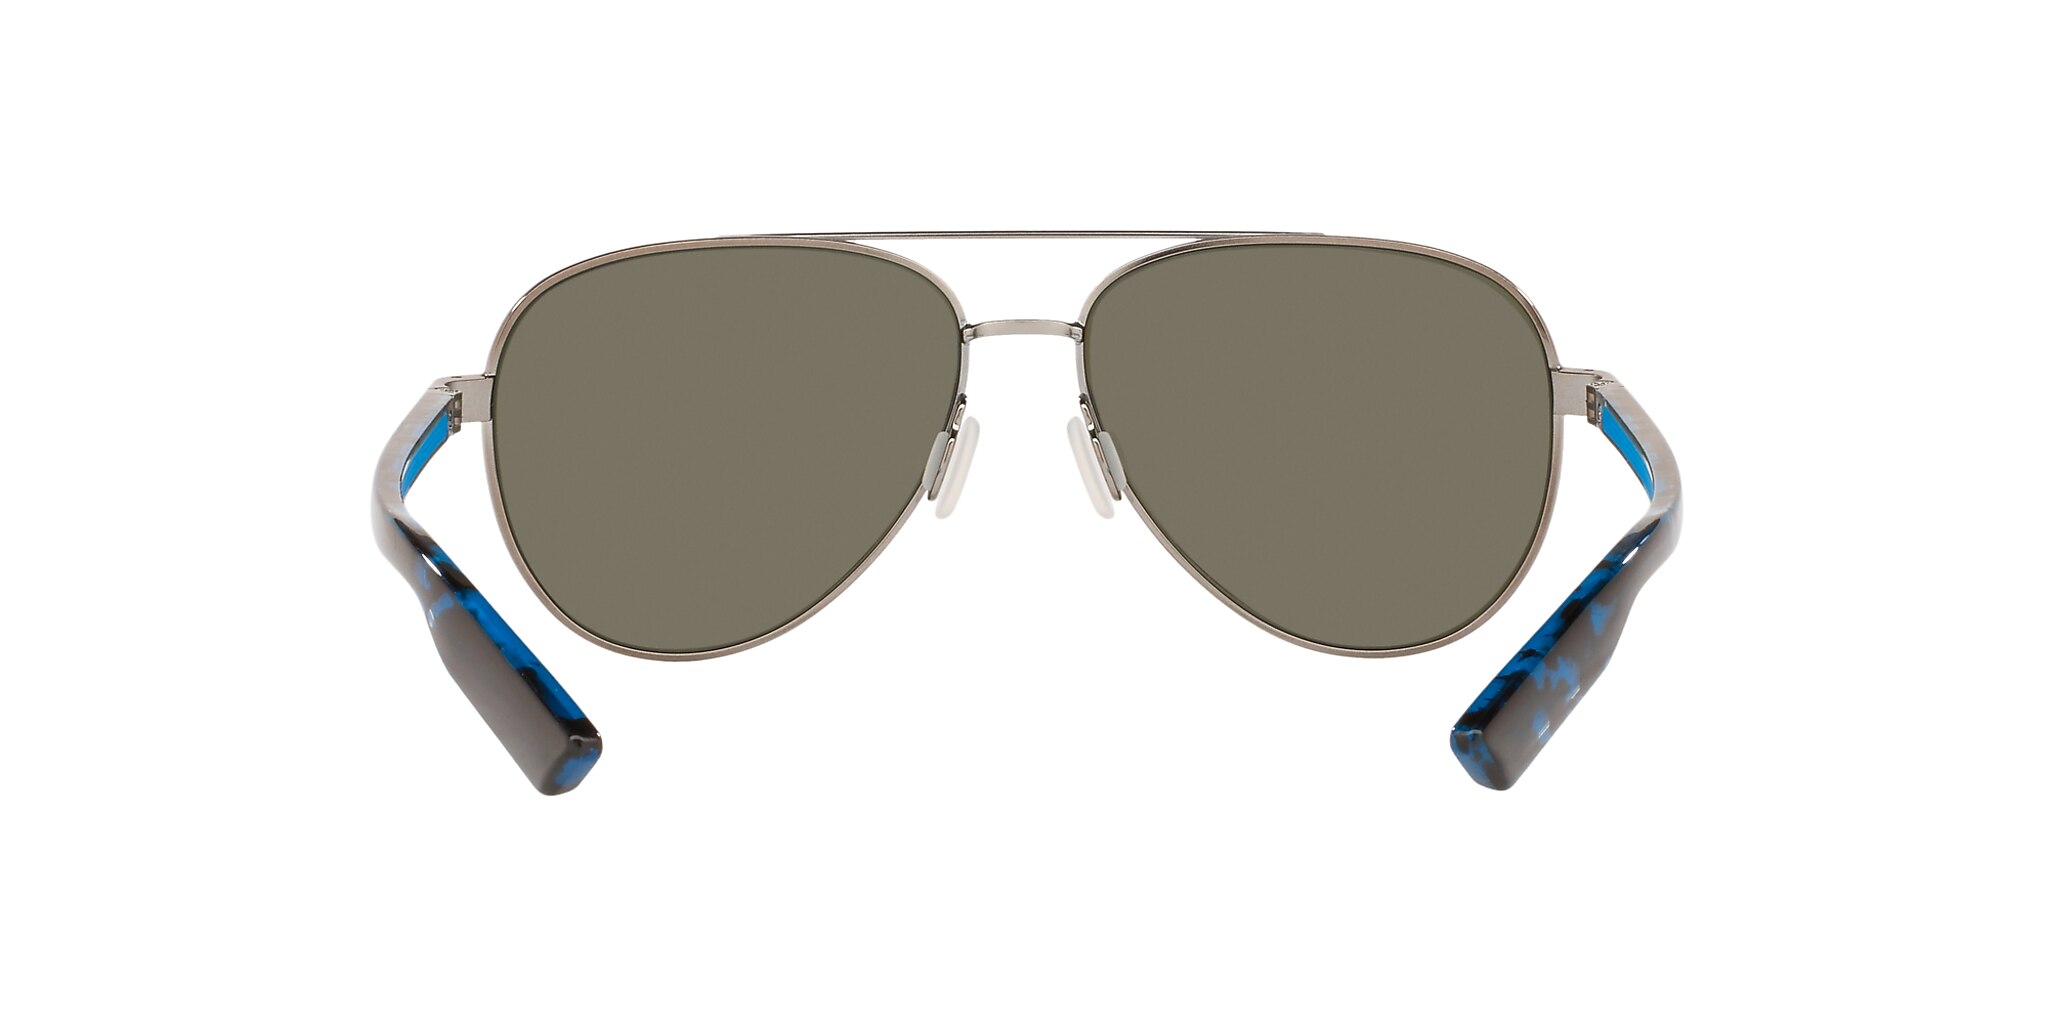 Peli Polarized Sunglasses in Blue Mirror | Costa Del Mar®